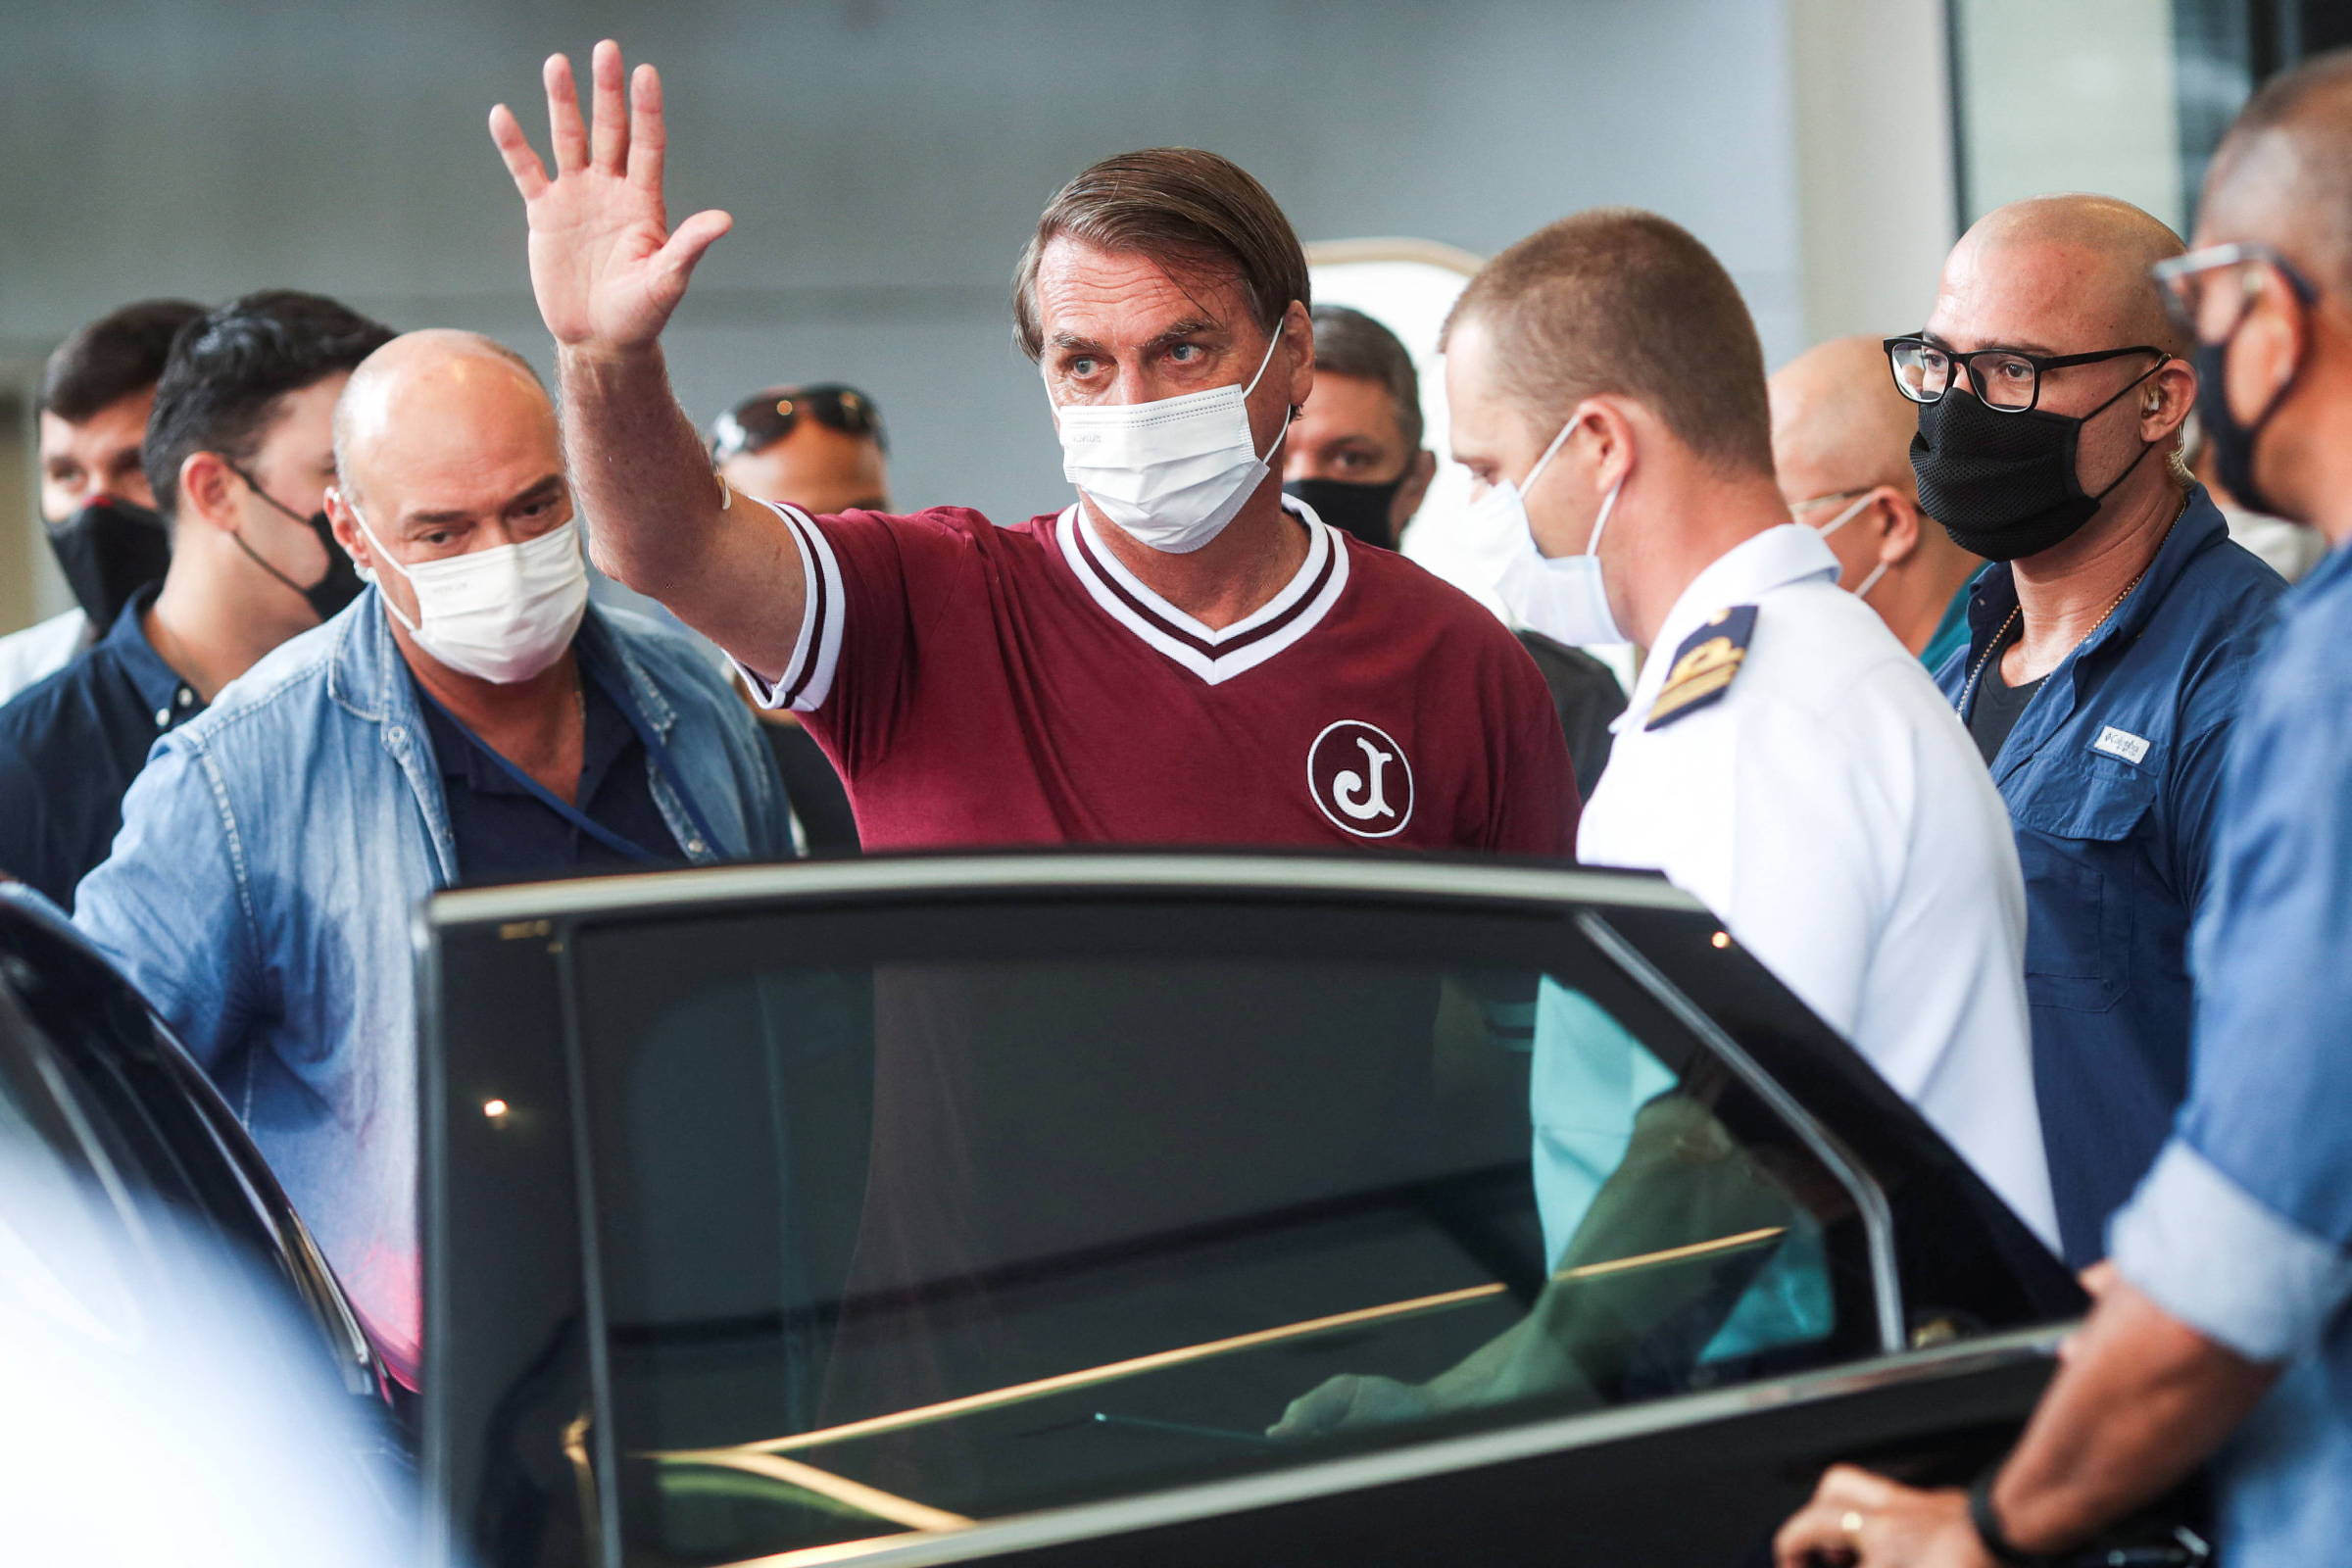 Bolsonaro viaja para jogo beneficente de sertanejos horas após receber alta